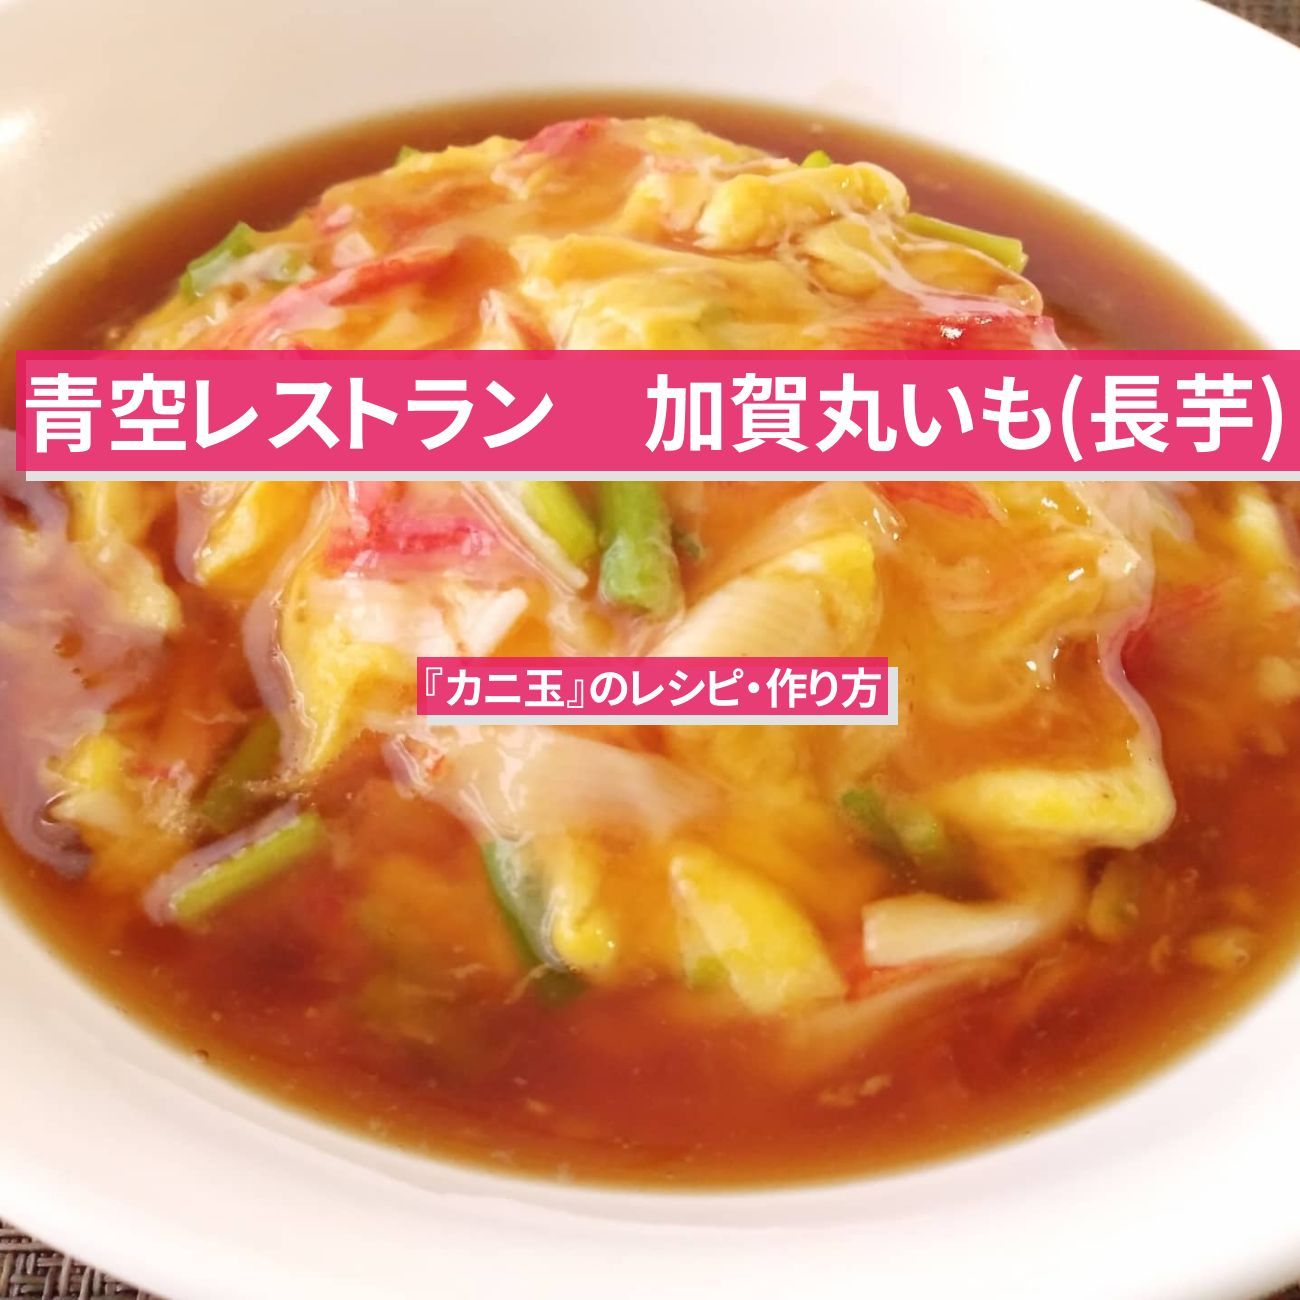 【青空レストラン】加賀丸いも(長芋)で『カニ玉』のレシピ・作り方